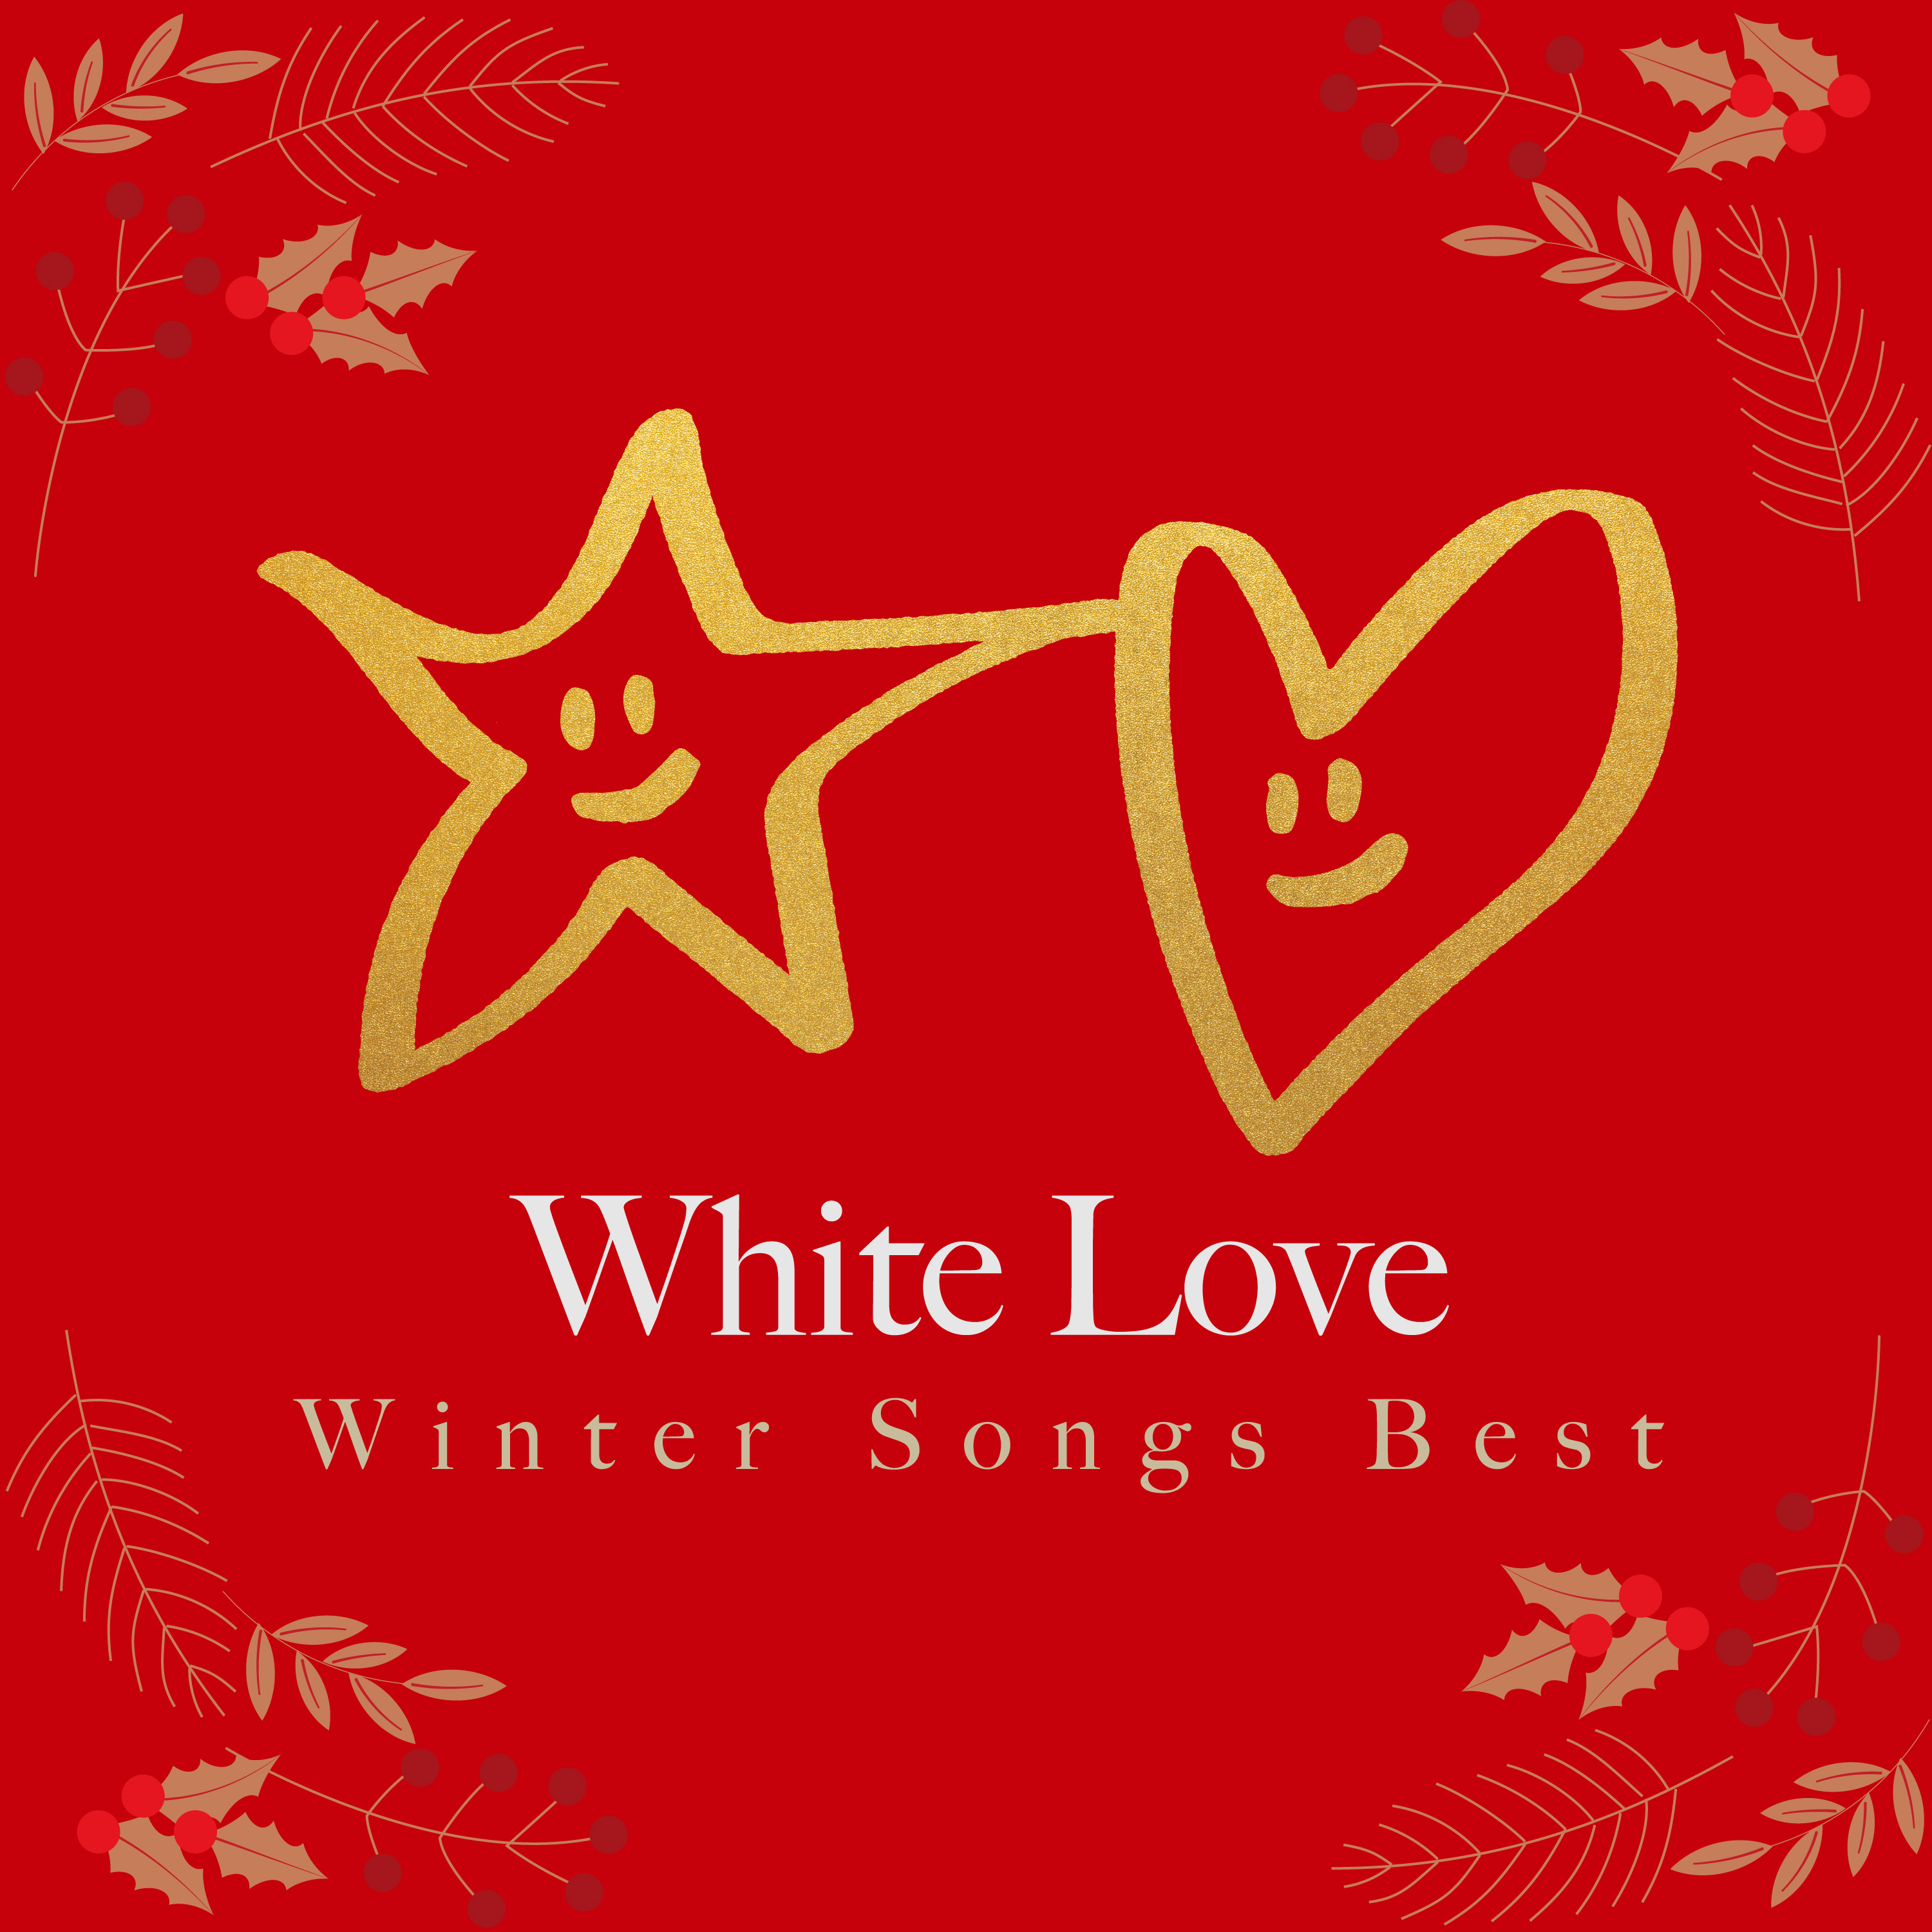 White love 〜Winter Songs Best〜